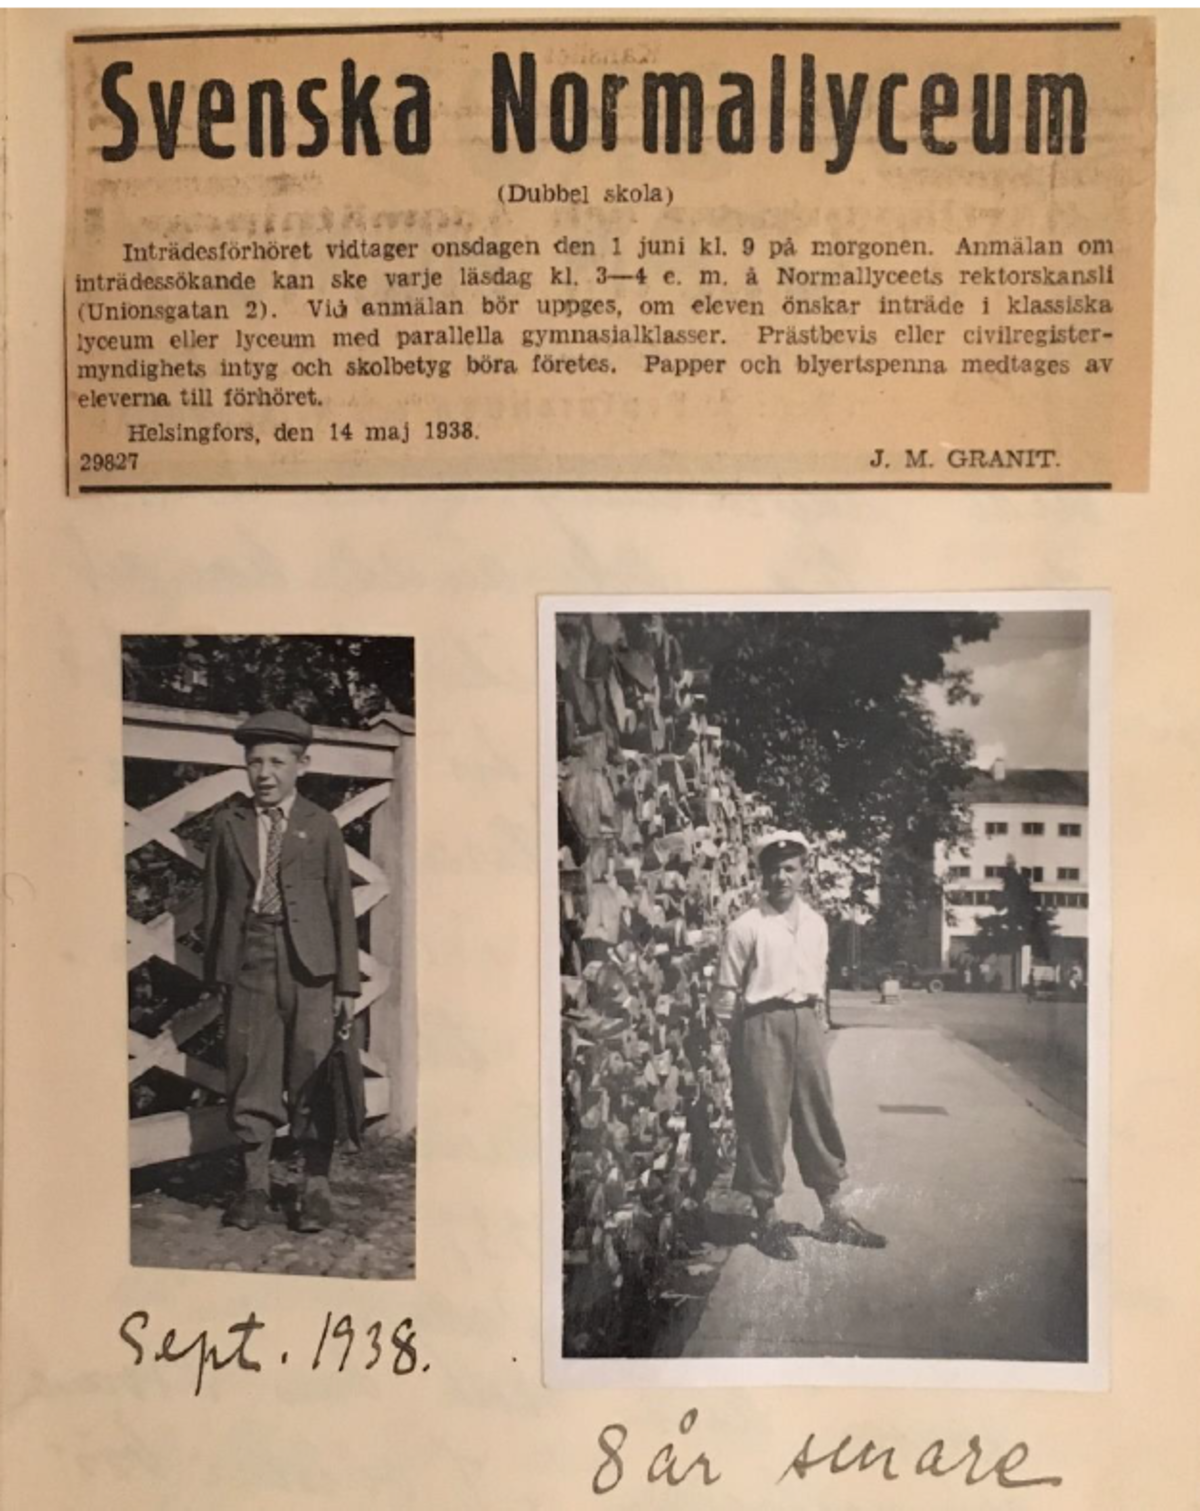 Päiväkirjan sivulla on lehdestä leikattu ilmoitus, jossa kerrotaan Svenska Normallyceumin pääsykokeista 14.5.1938. Sen alla on kaksi valokuvaa, vasemmassa poika syyskuussa 1938 ja oikeassa sama poika 8 vuotta myöhemmin.